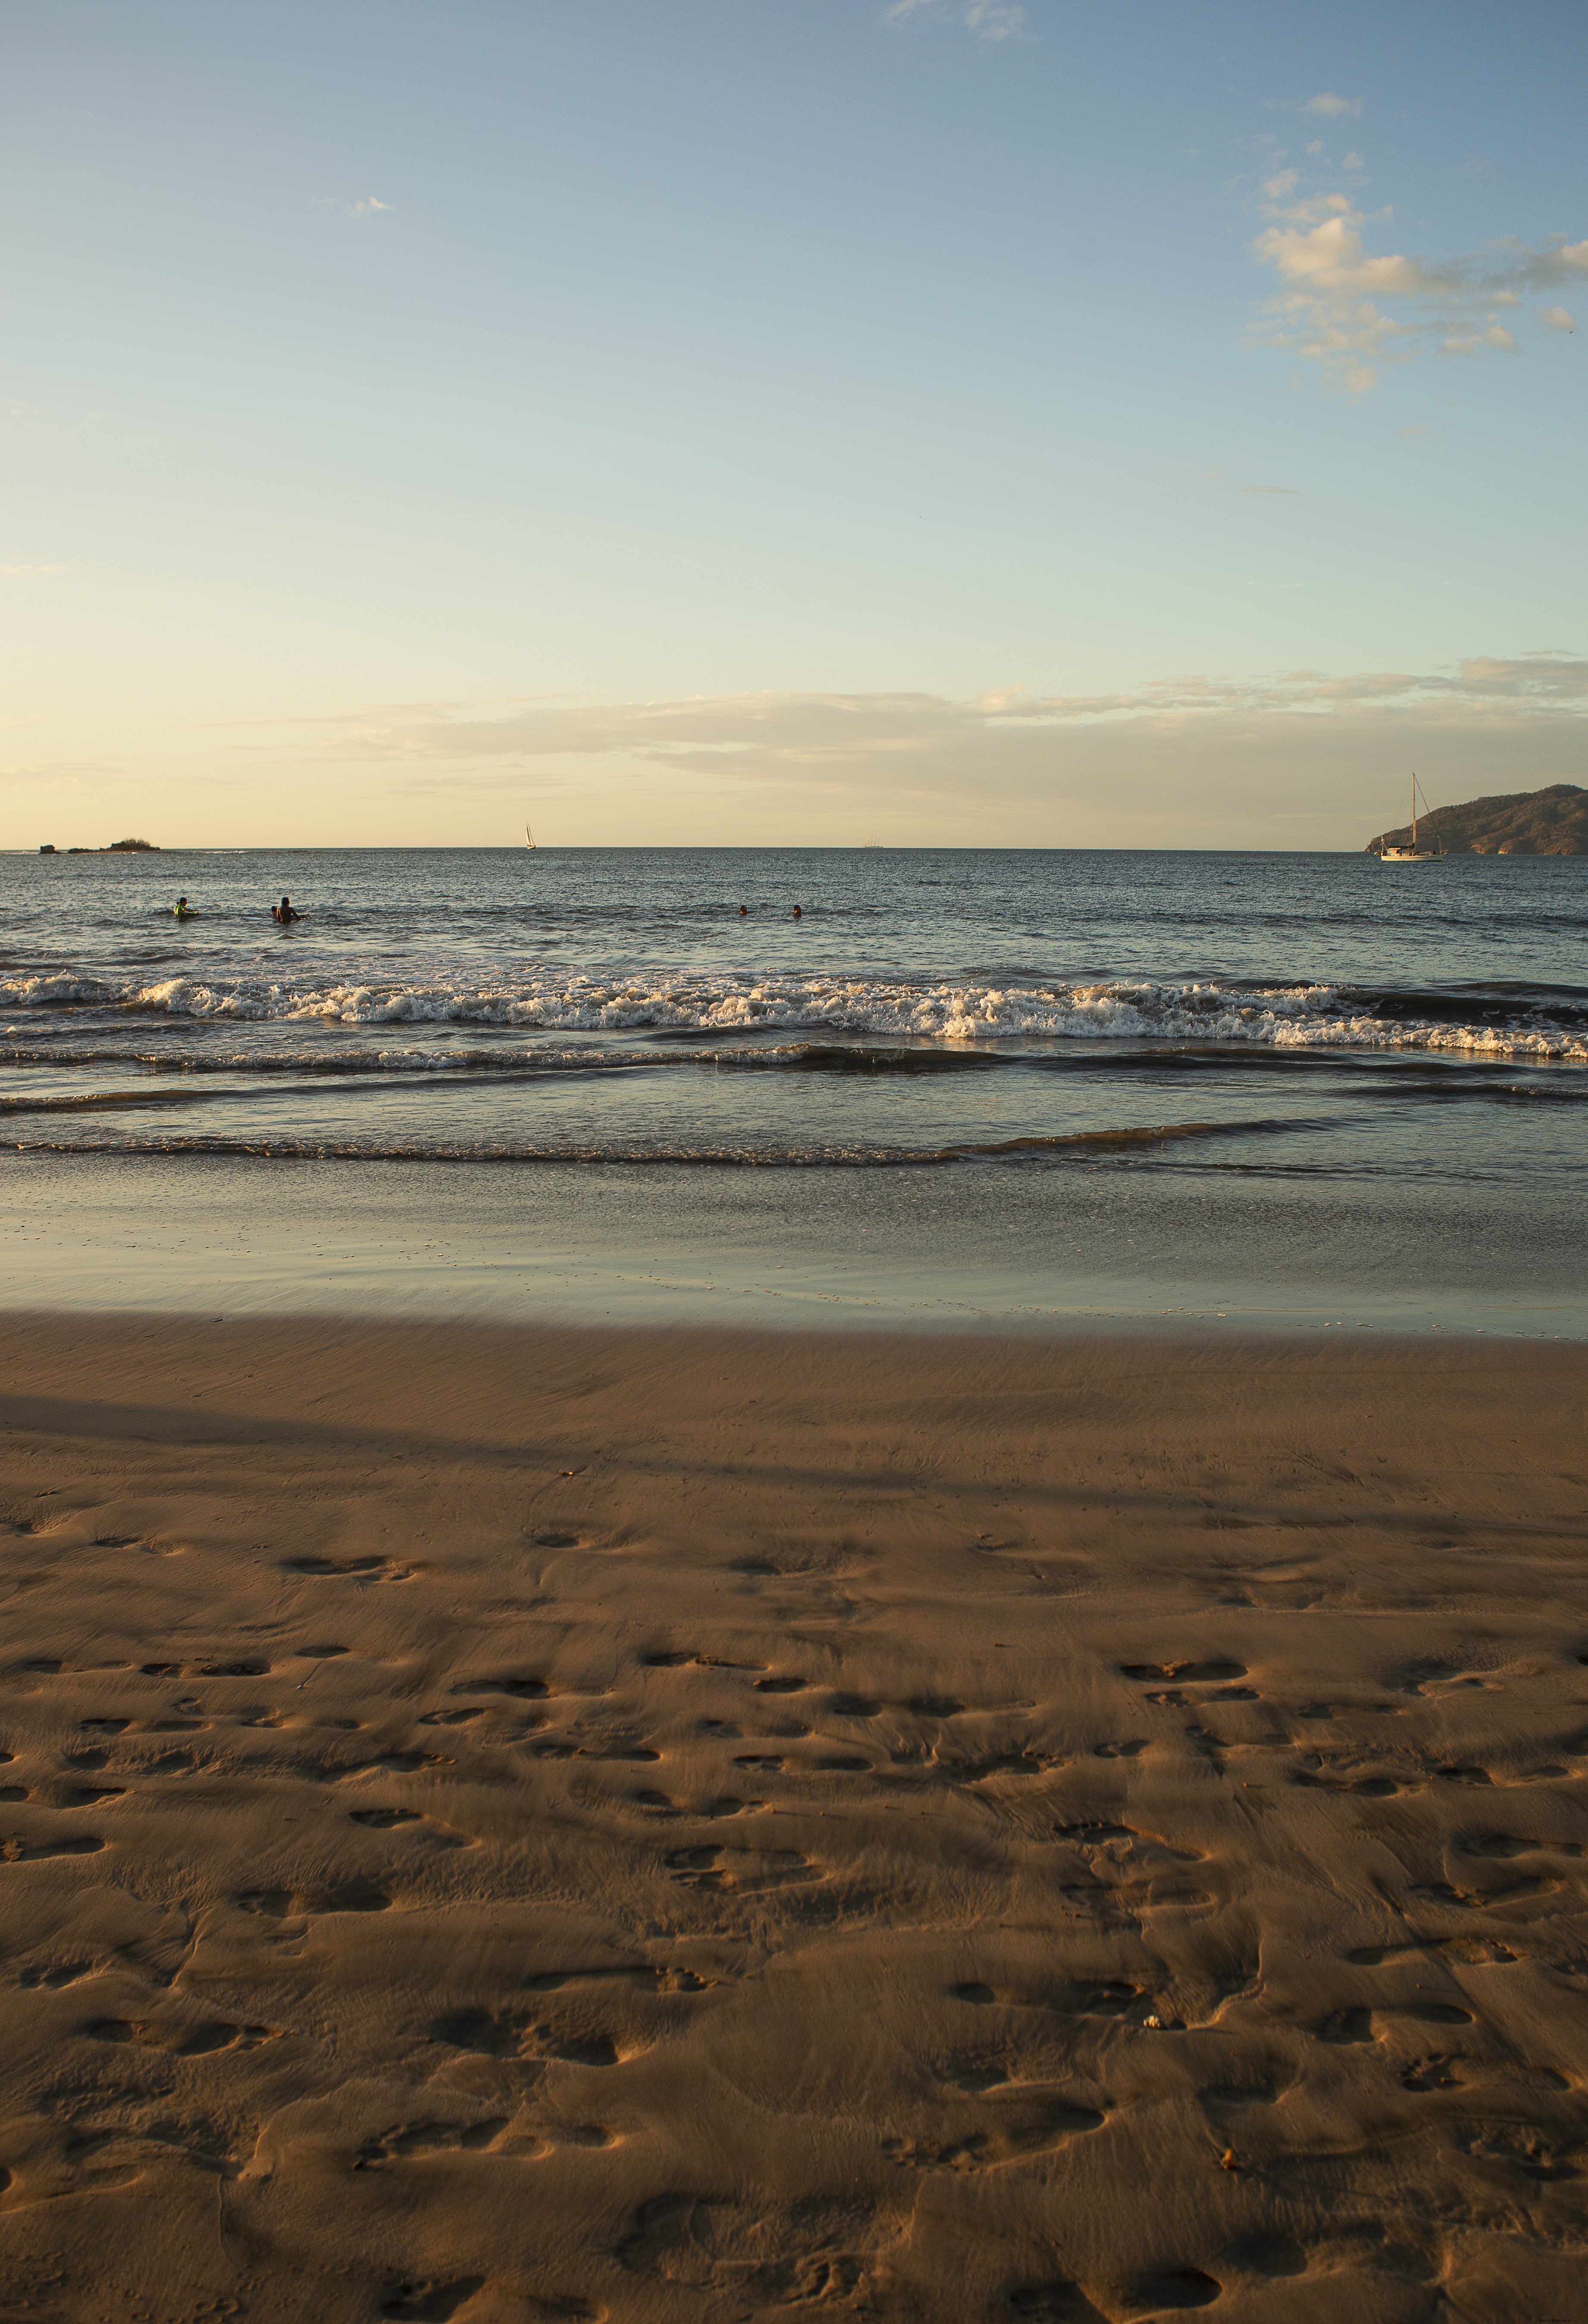 La marea llega en una foto de escena de playa soleada 